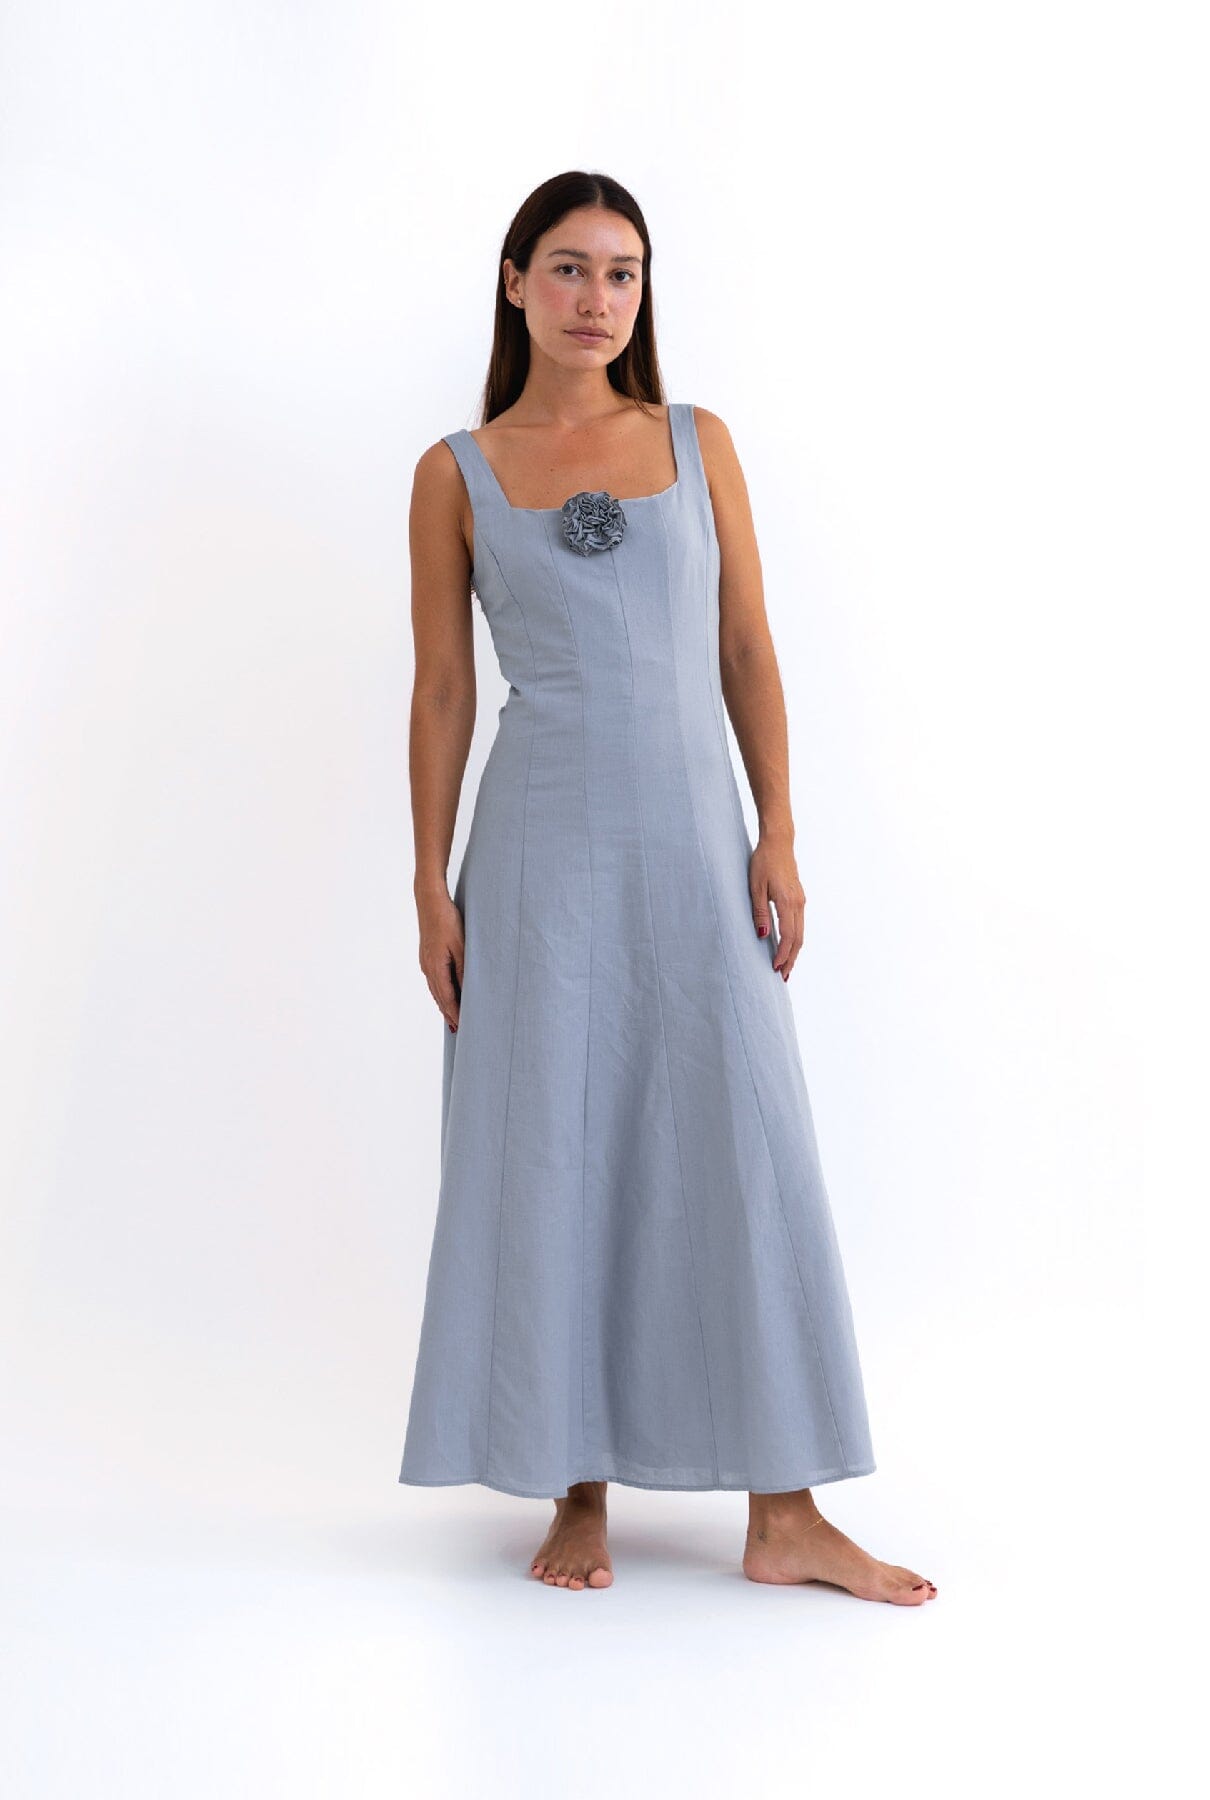 SEAFOAM LINEN SUNDRESS Dresses The Villã Concept 